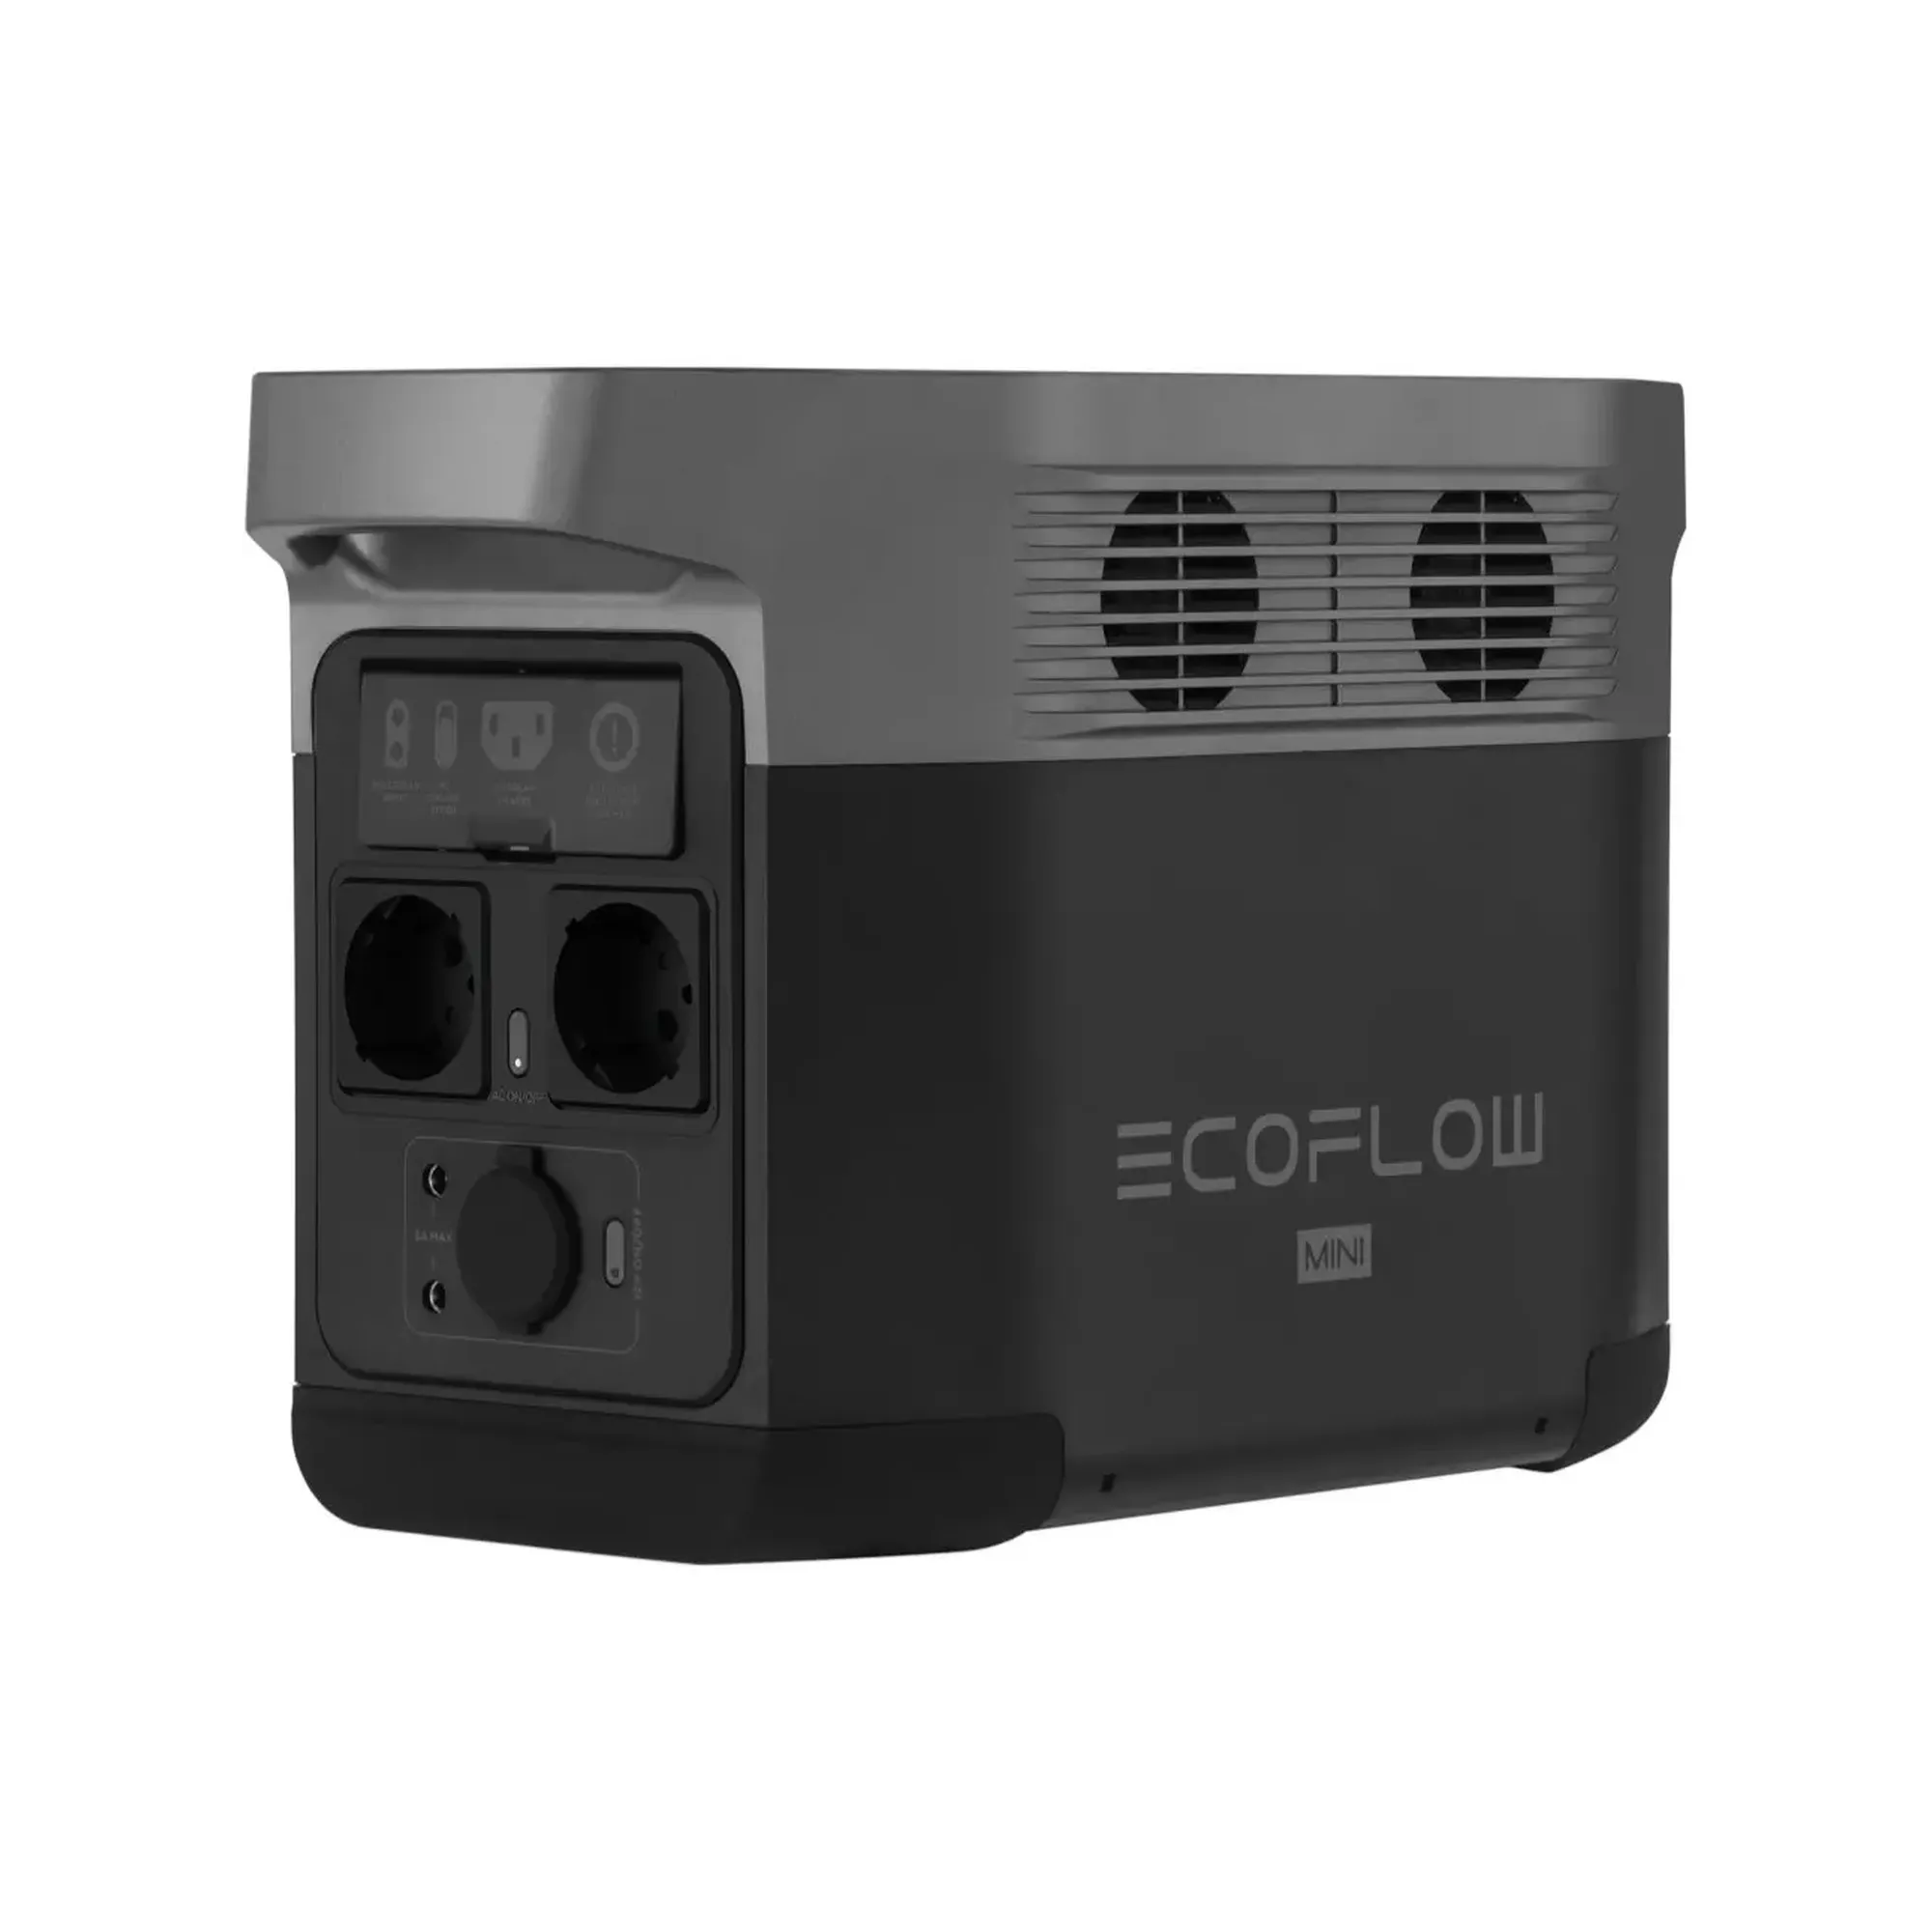 Ecoflow зарядная станция. Зарядная станция Ecoflow. Портативная зарядная станция Ecoflow Delta. Ecoflow Delta Mini. Ecoflow Delta Mini 882wh.